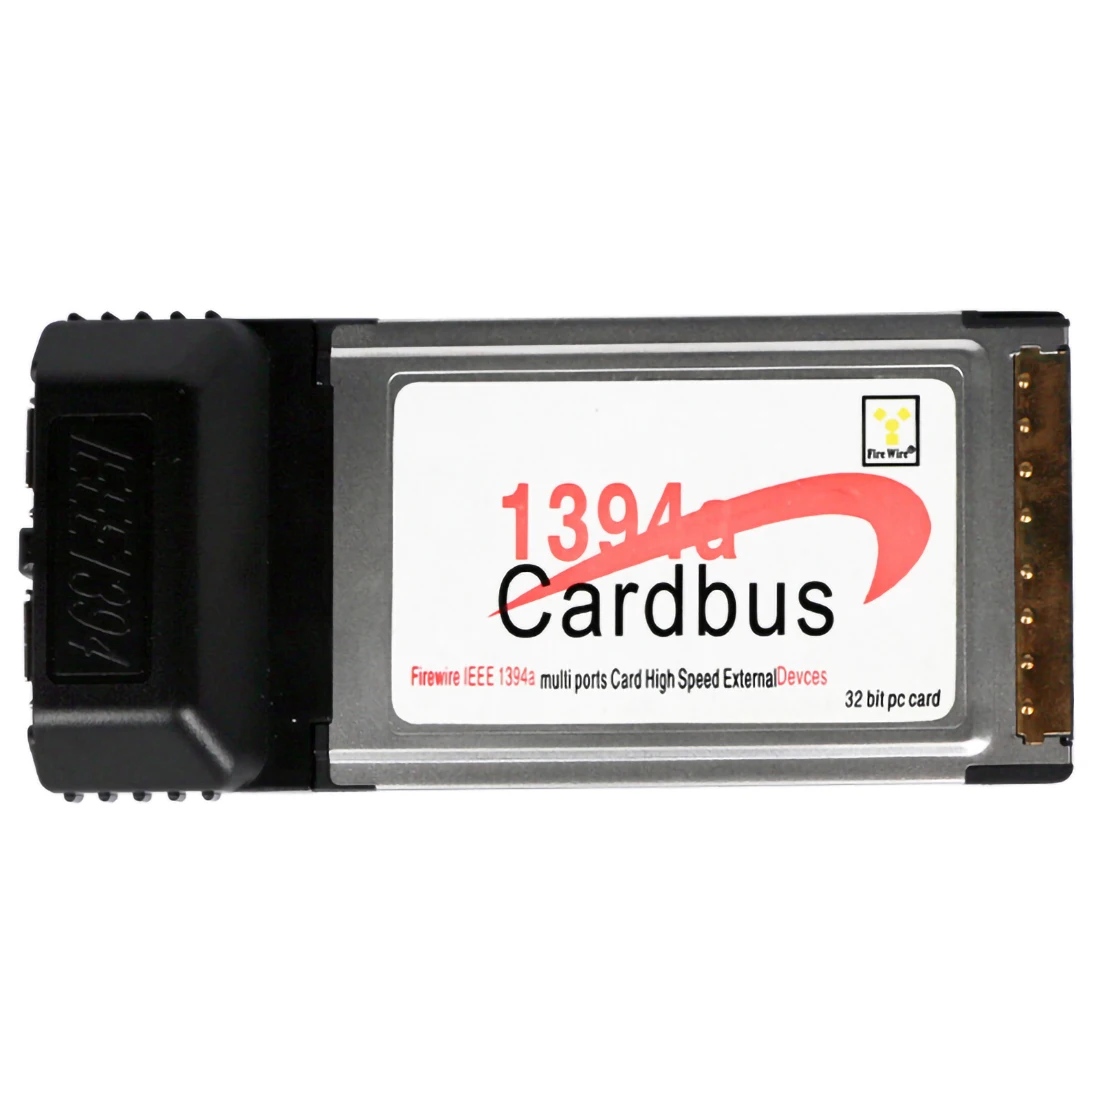 XT-XINTE 2 порта 6 Pin 1394A IEEE 1394 CardBus карта 54 мм для PCMCIA цифровой камеры DV видеокамеры жесткие диски съемные